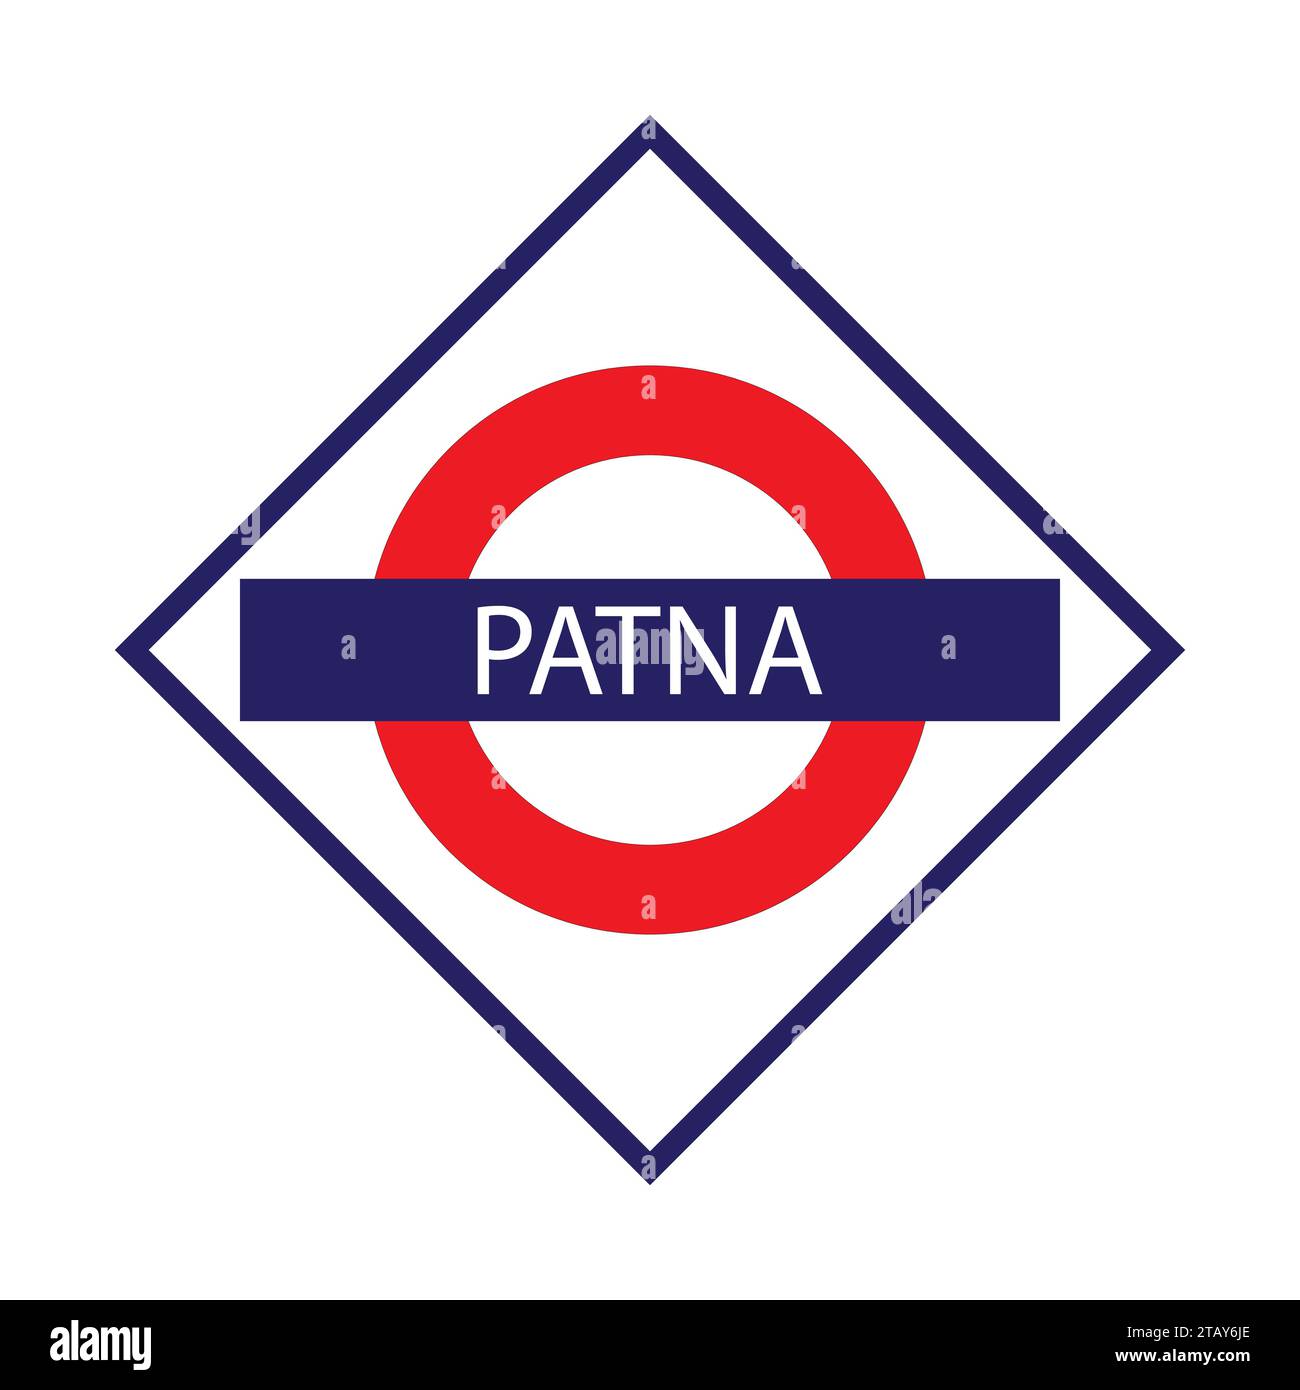 Patna Junction Railways Namensschild isoliert auf weiß Stock Vektor